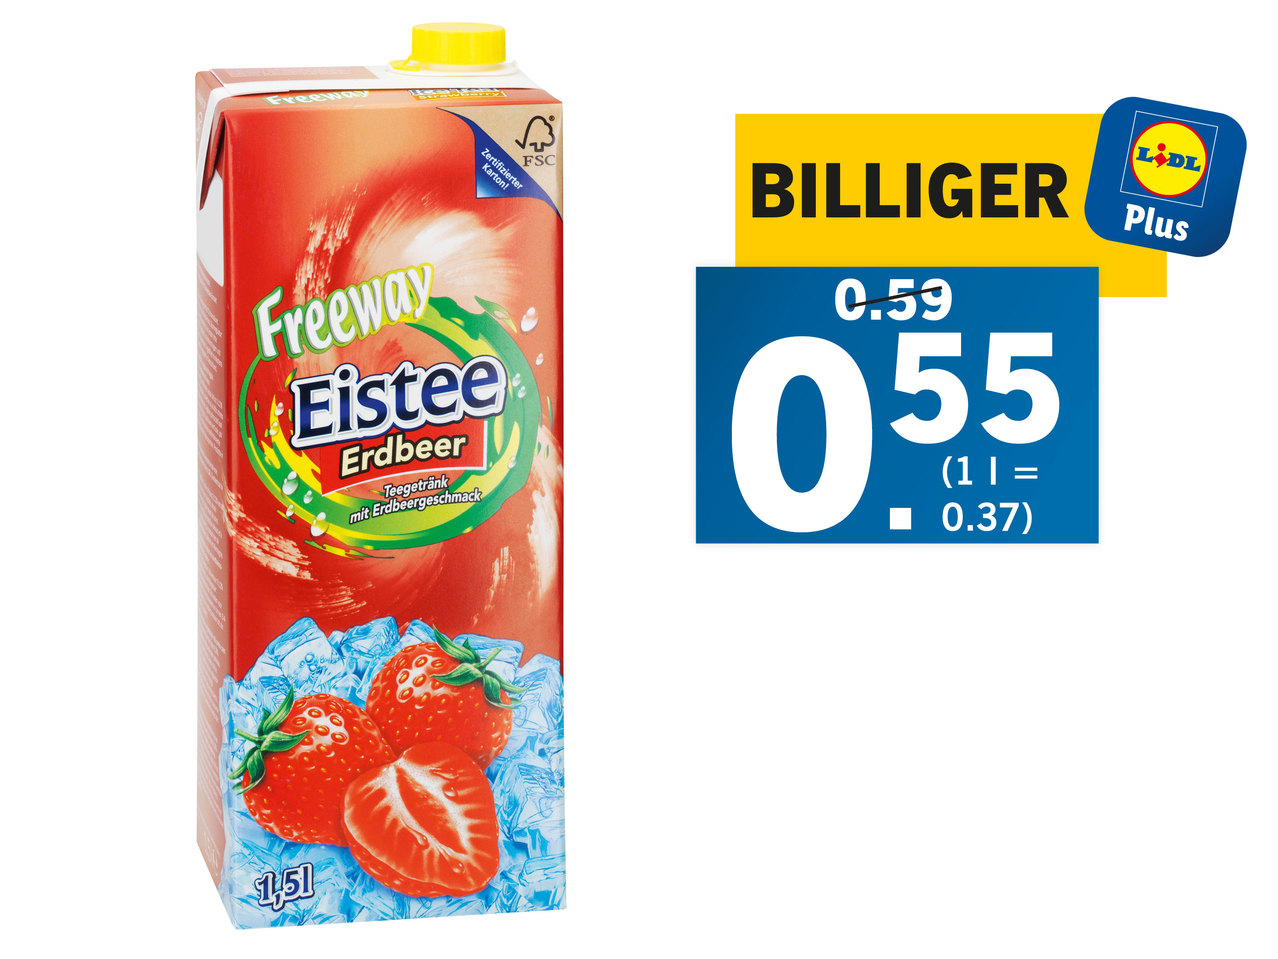 FREEWAY Eistee Erdbeer/Mango